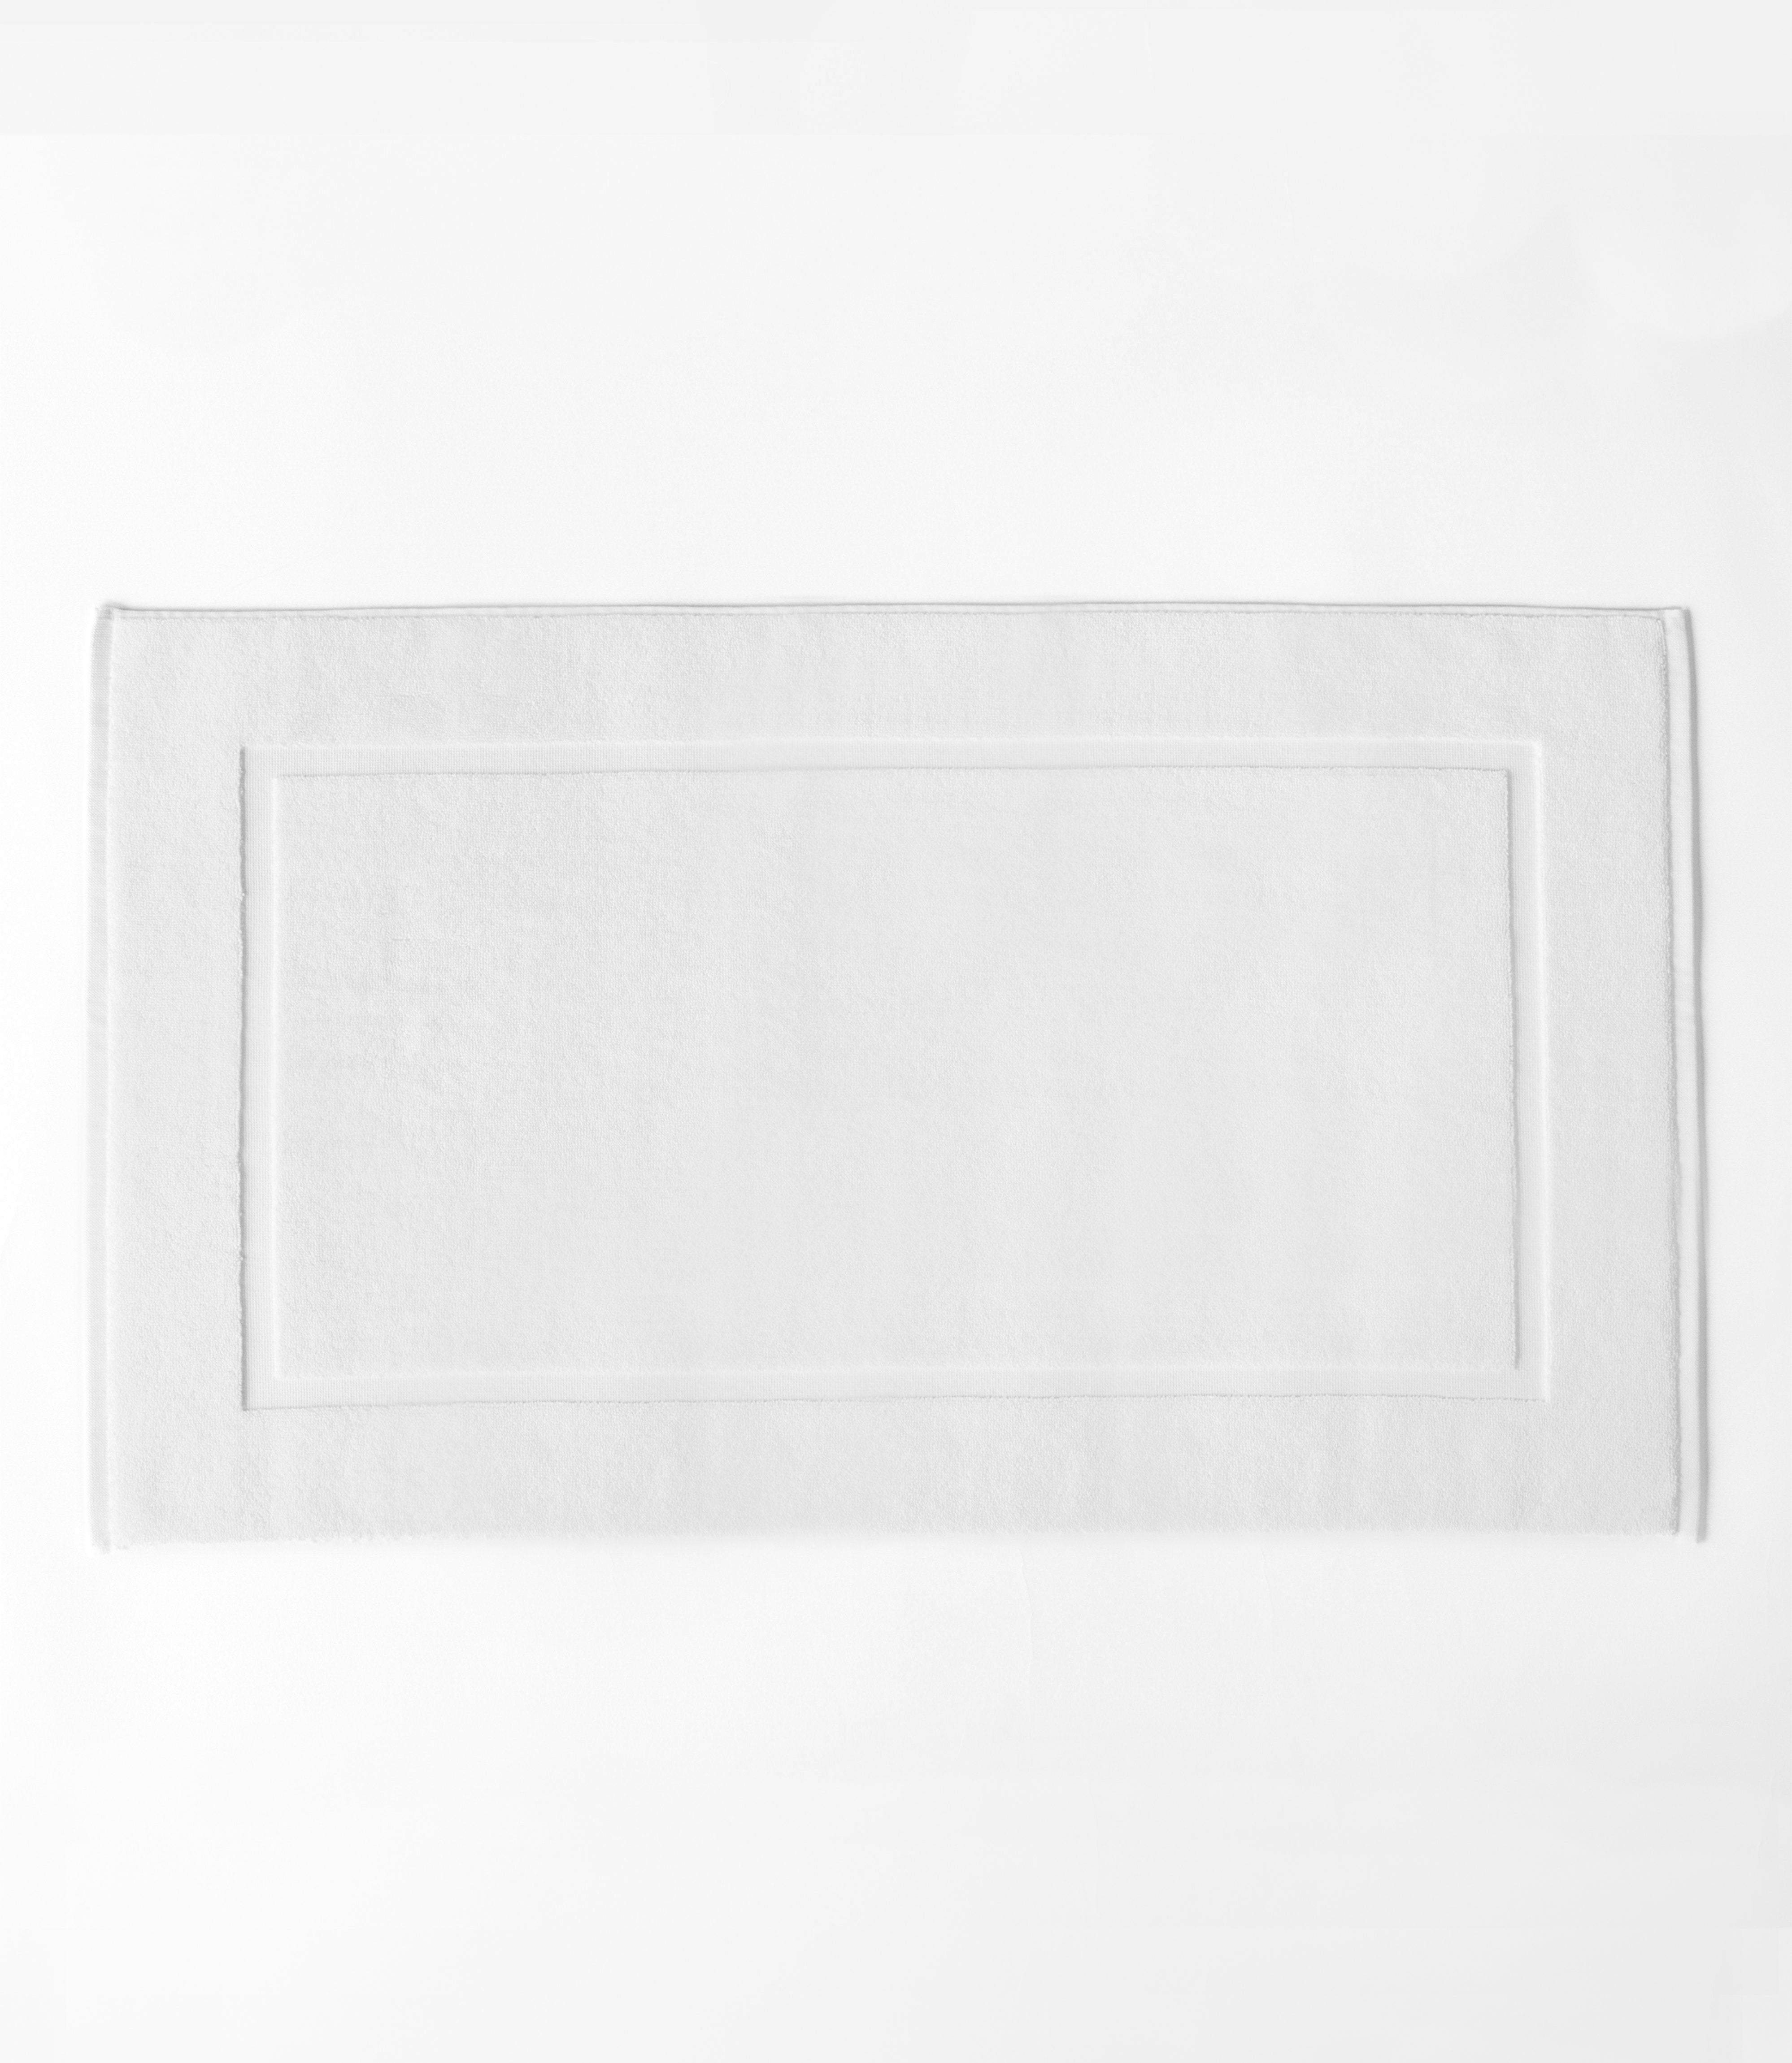 White Premium Plush Bath Mat resting on white background.|Color:White